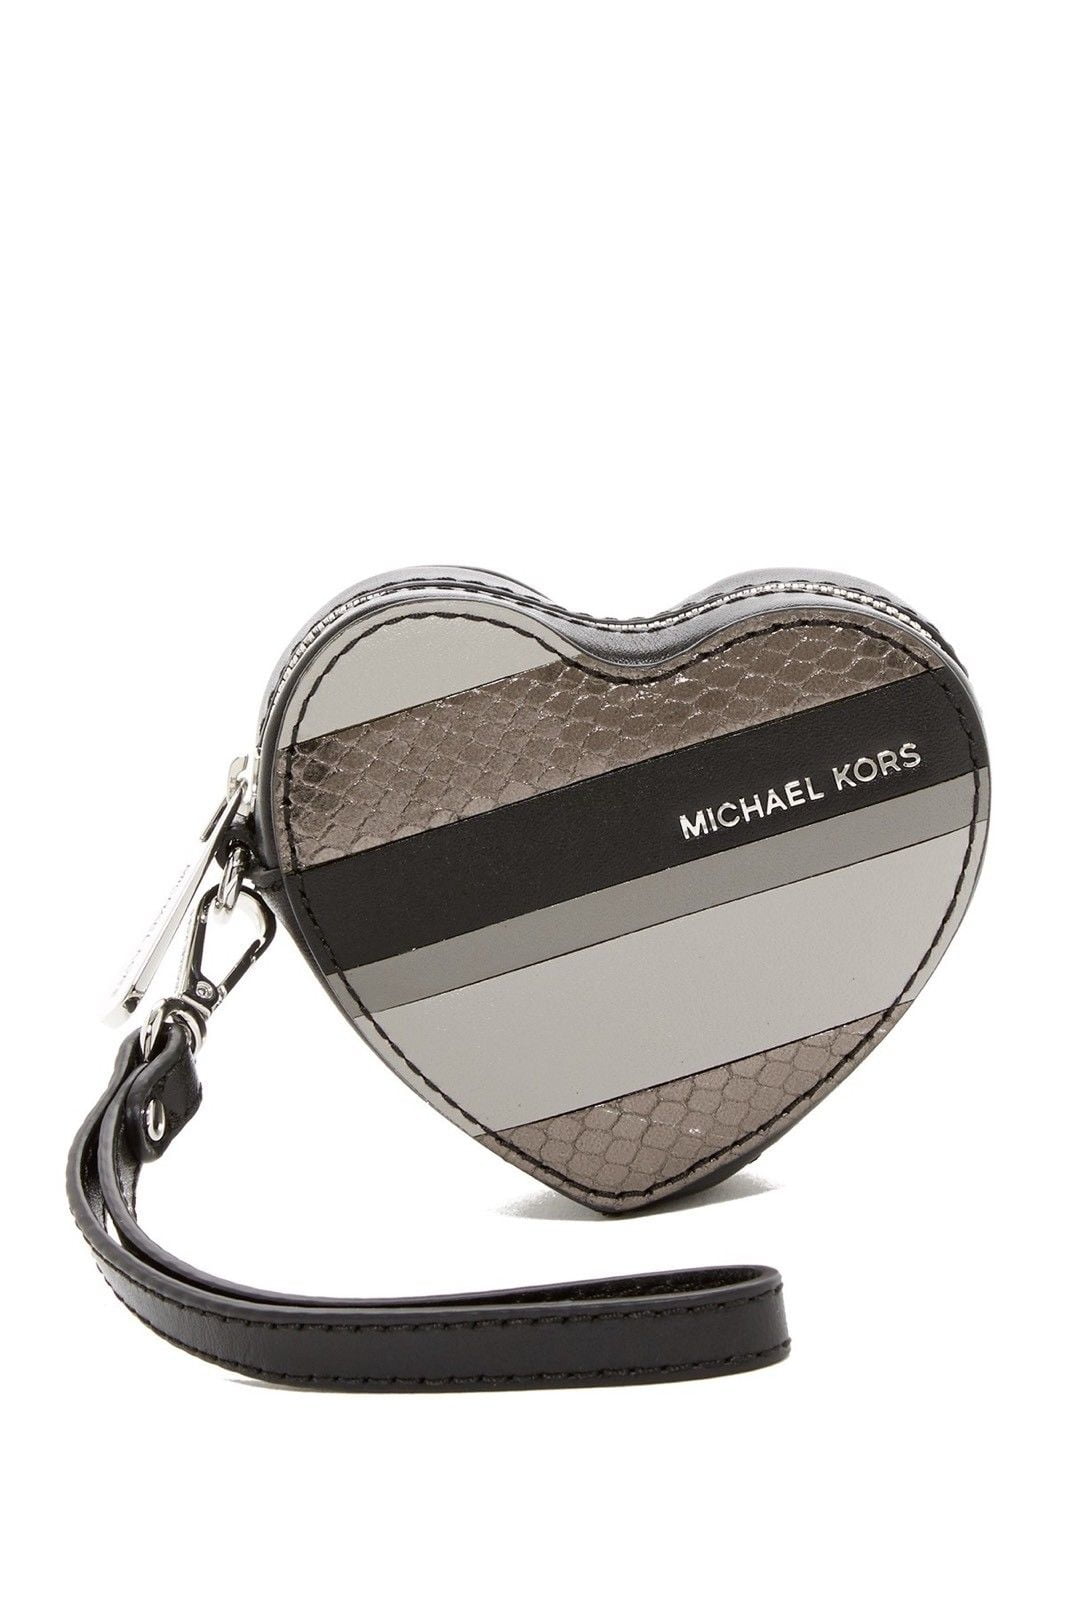 michael kors heart coin purse